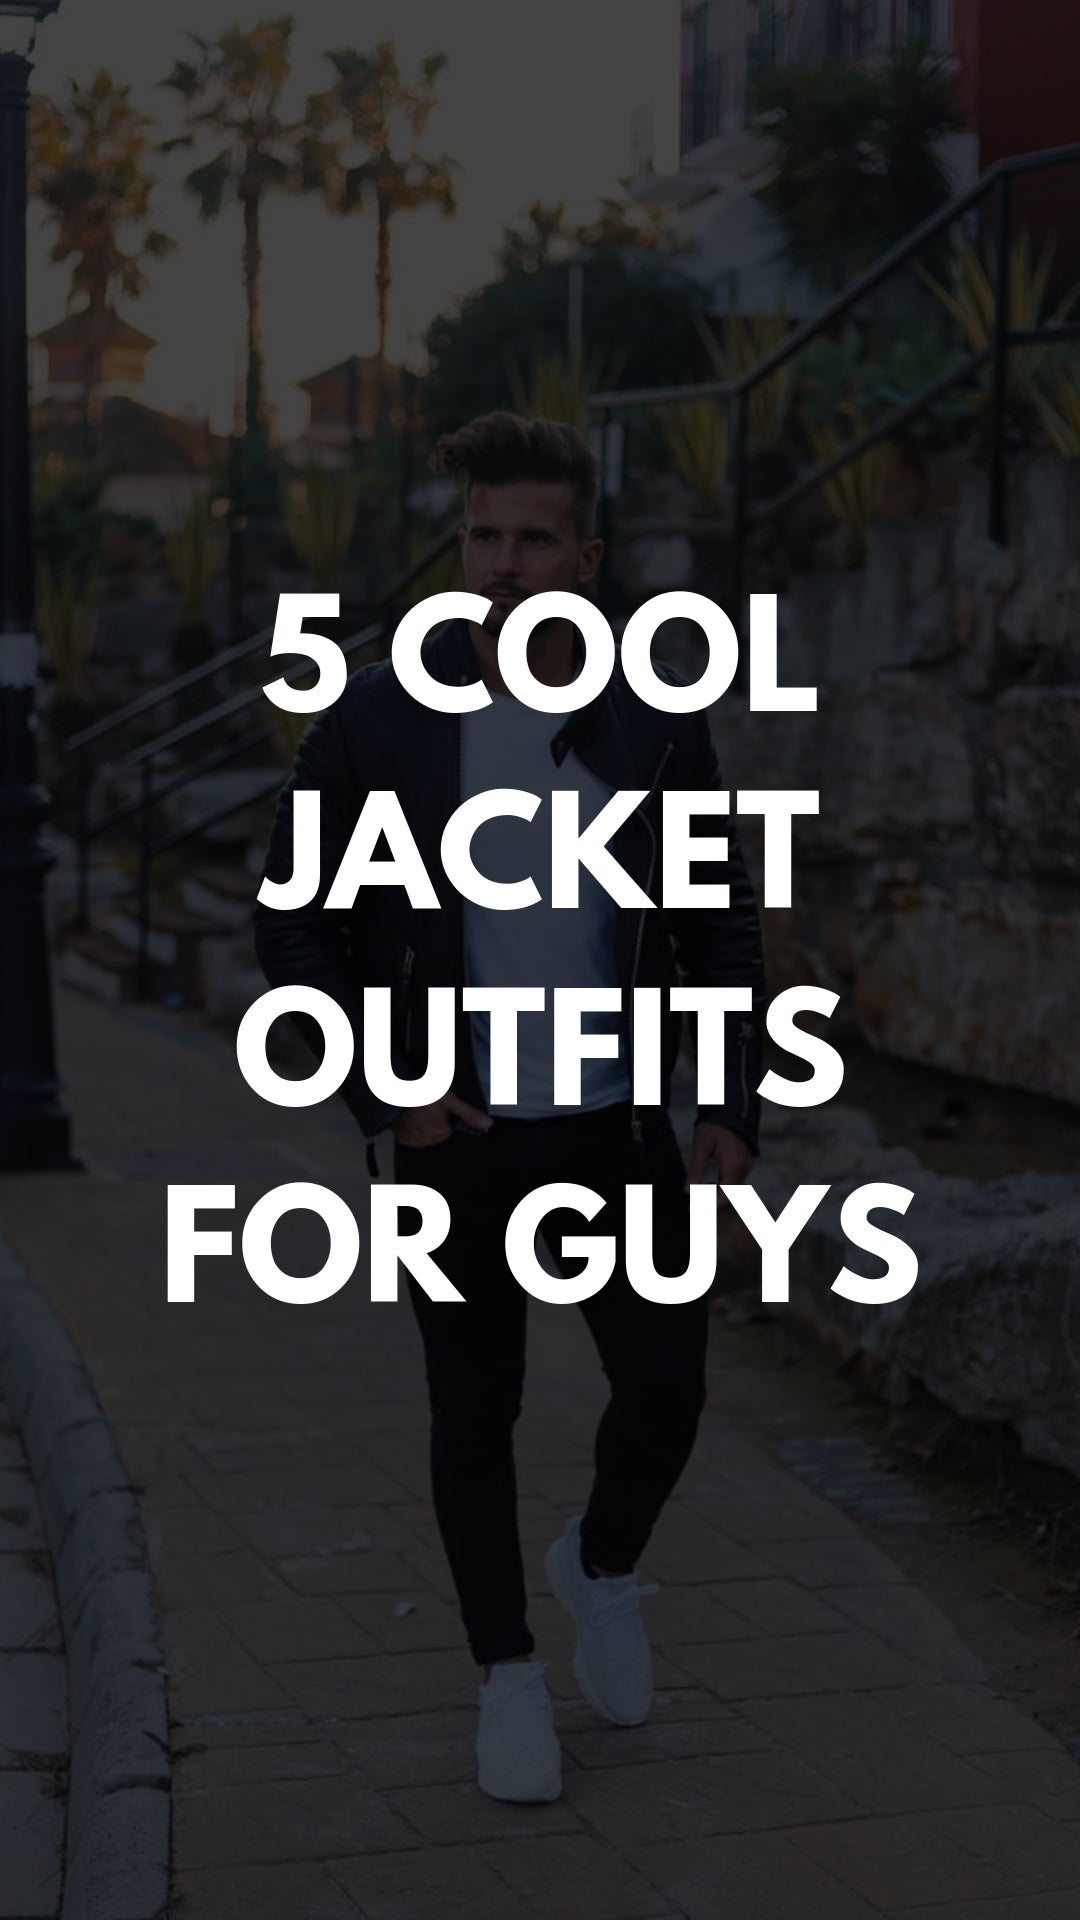 How To Wear Jackets Like A Insta Celeb #jacket #outfits #mensfashion #streetstyle 